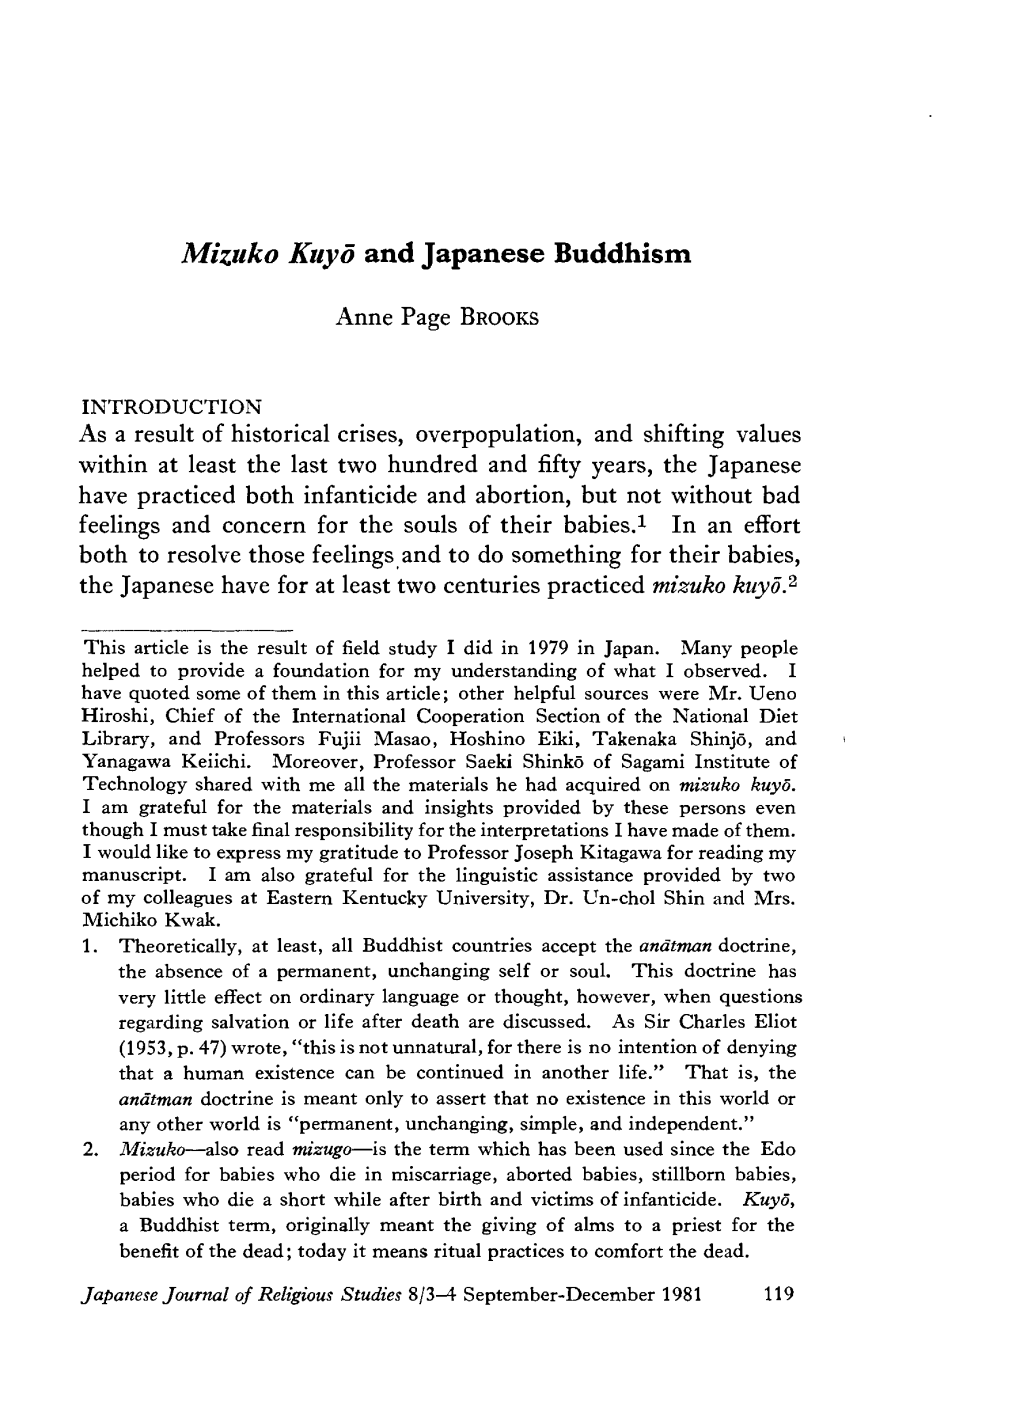 Mizuko Kuyo and Japanese Buddhism